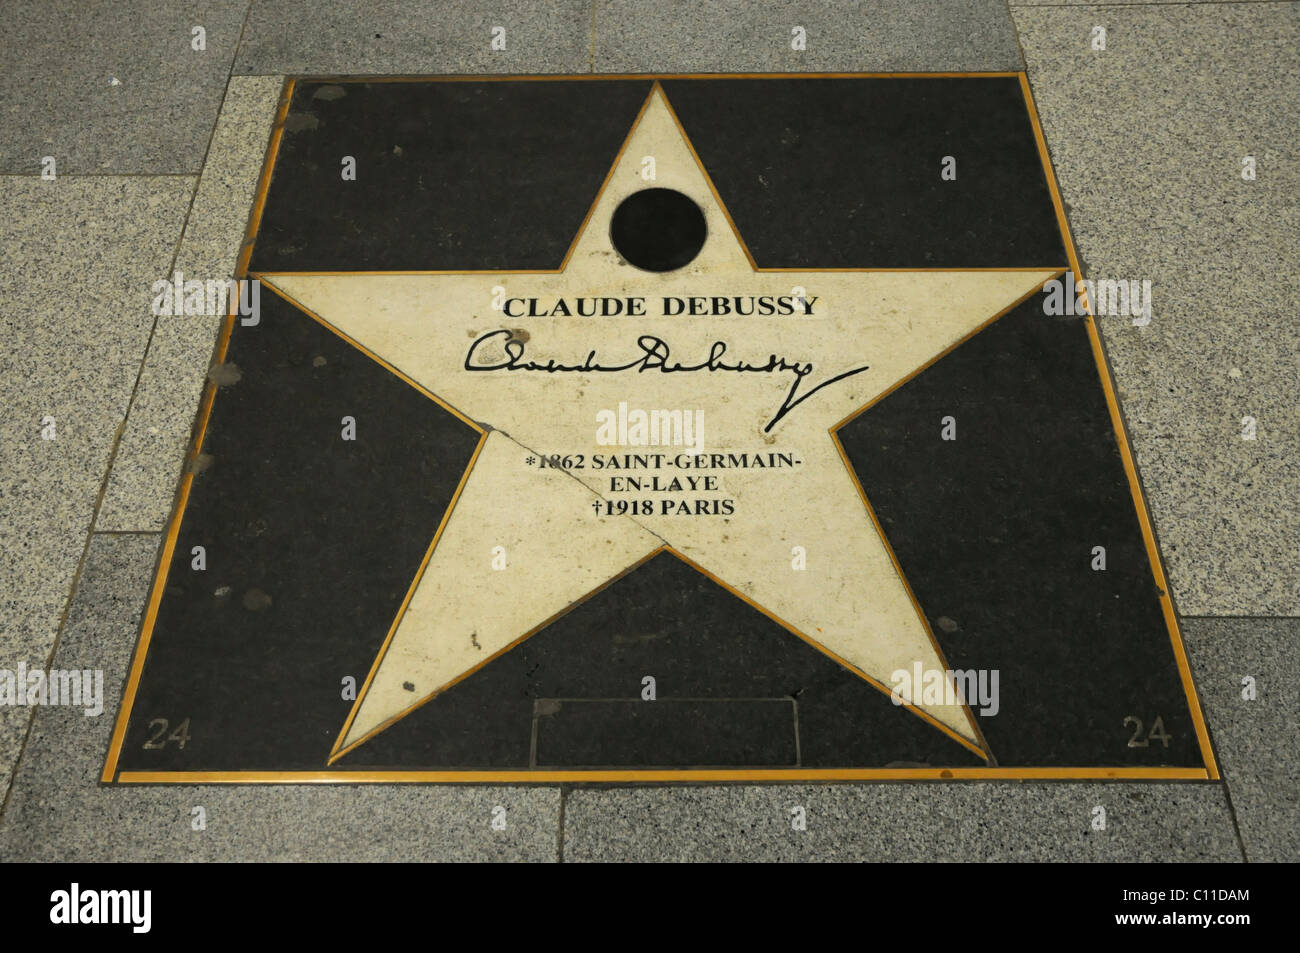 CLAUDE DEBUSSY, 1862-1918, placa conmemorativa, Viena, Austria, Europa Foto de stock